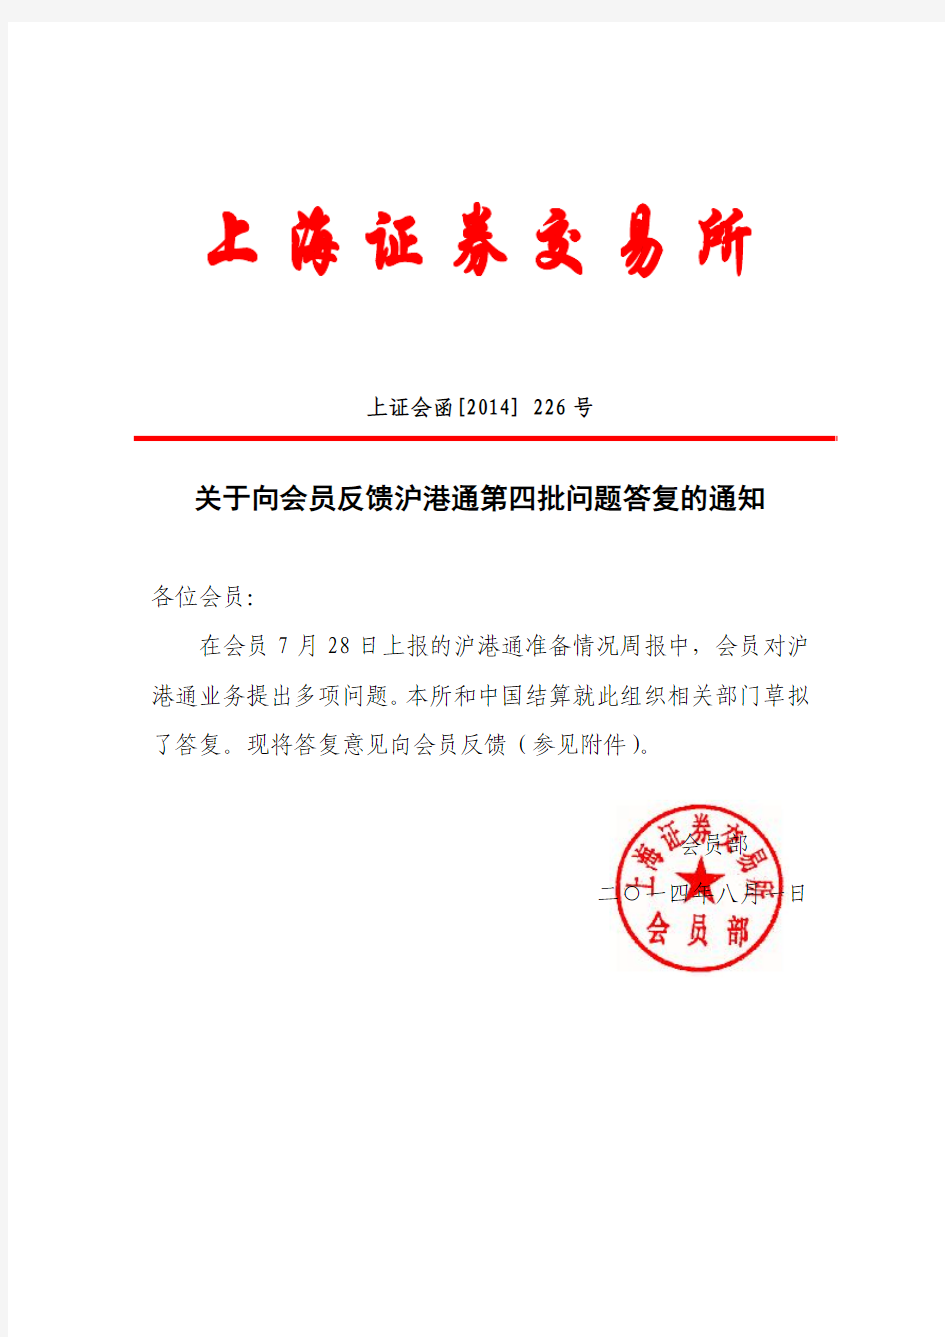 上交所-关于向会员反馈沪港通第四批问题答复的通知(20140801)